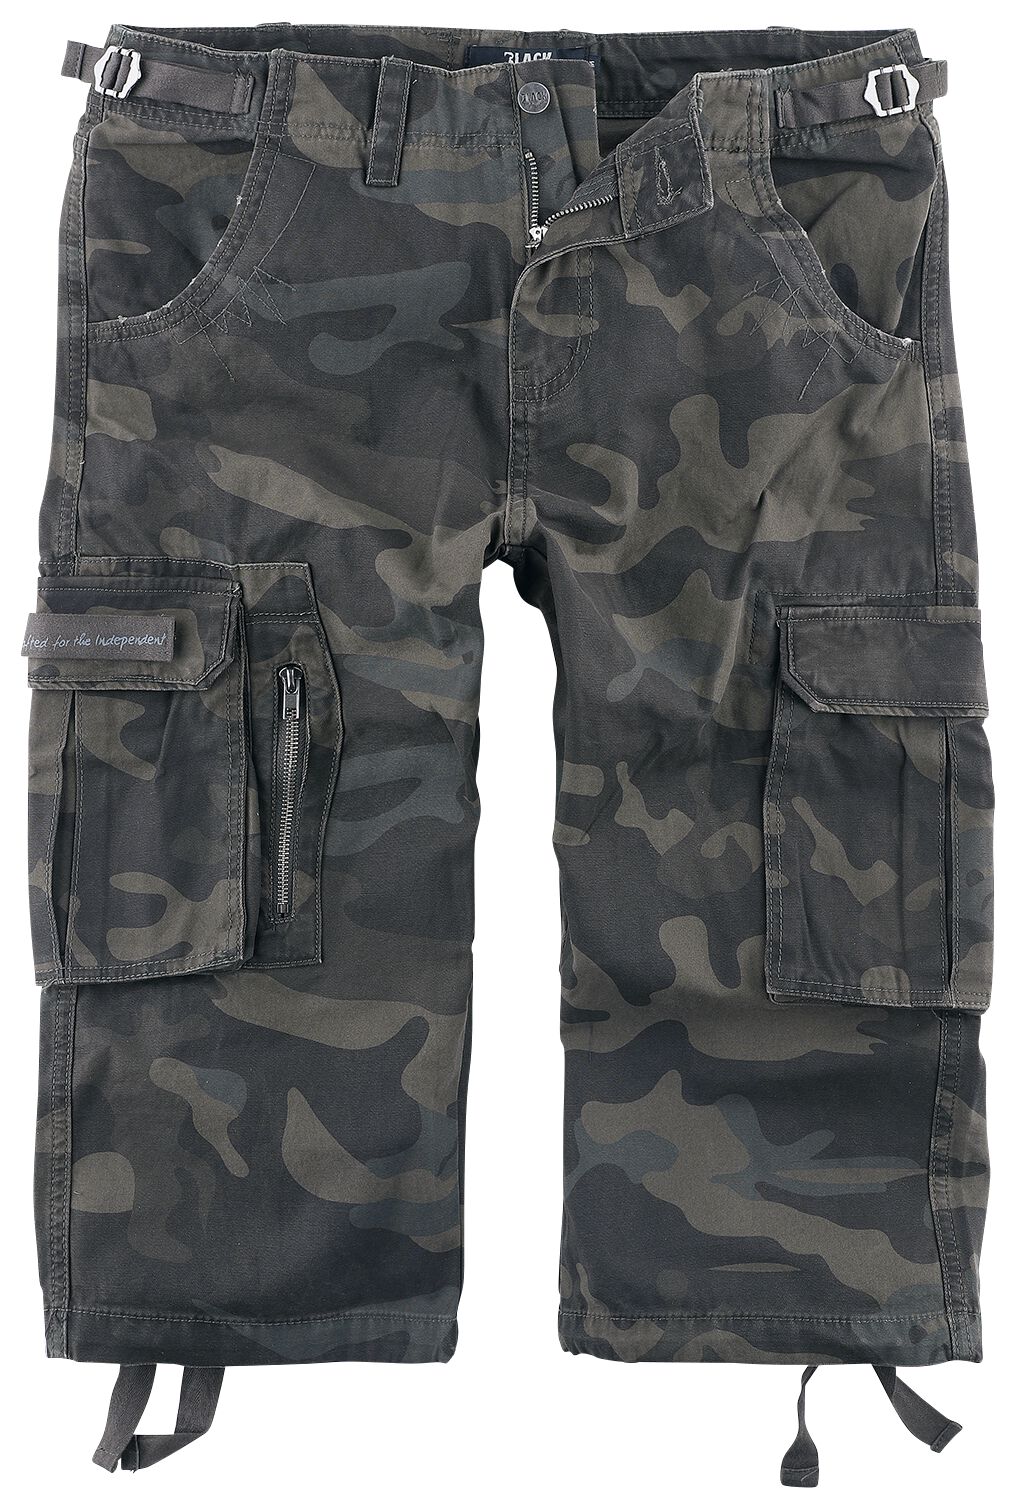 Black Premium by EMP - Camouflage/Flecktarn Short - 3/4 Army Vintage Shorts - S bis 7XL - für Männer - Größe 6XL - darkcamo